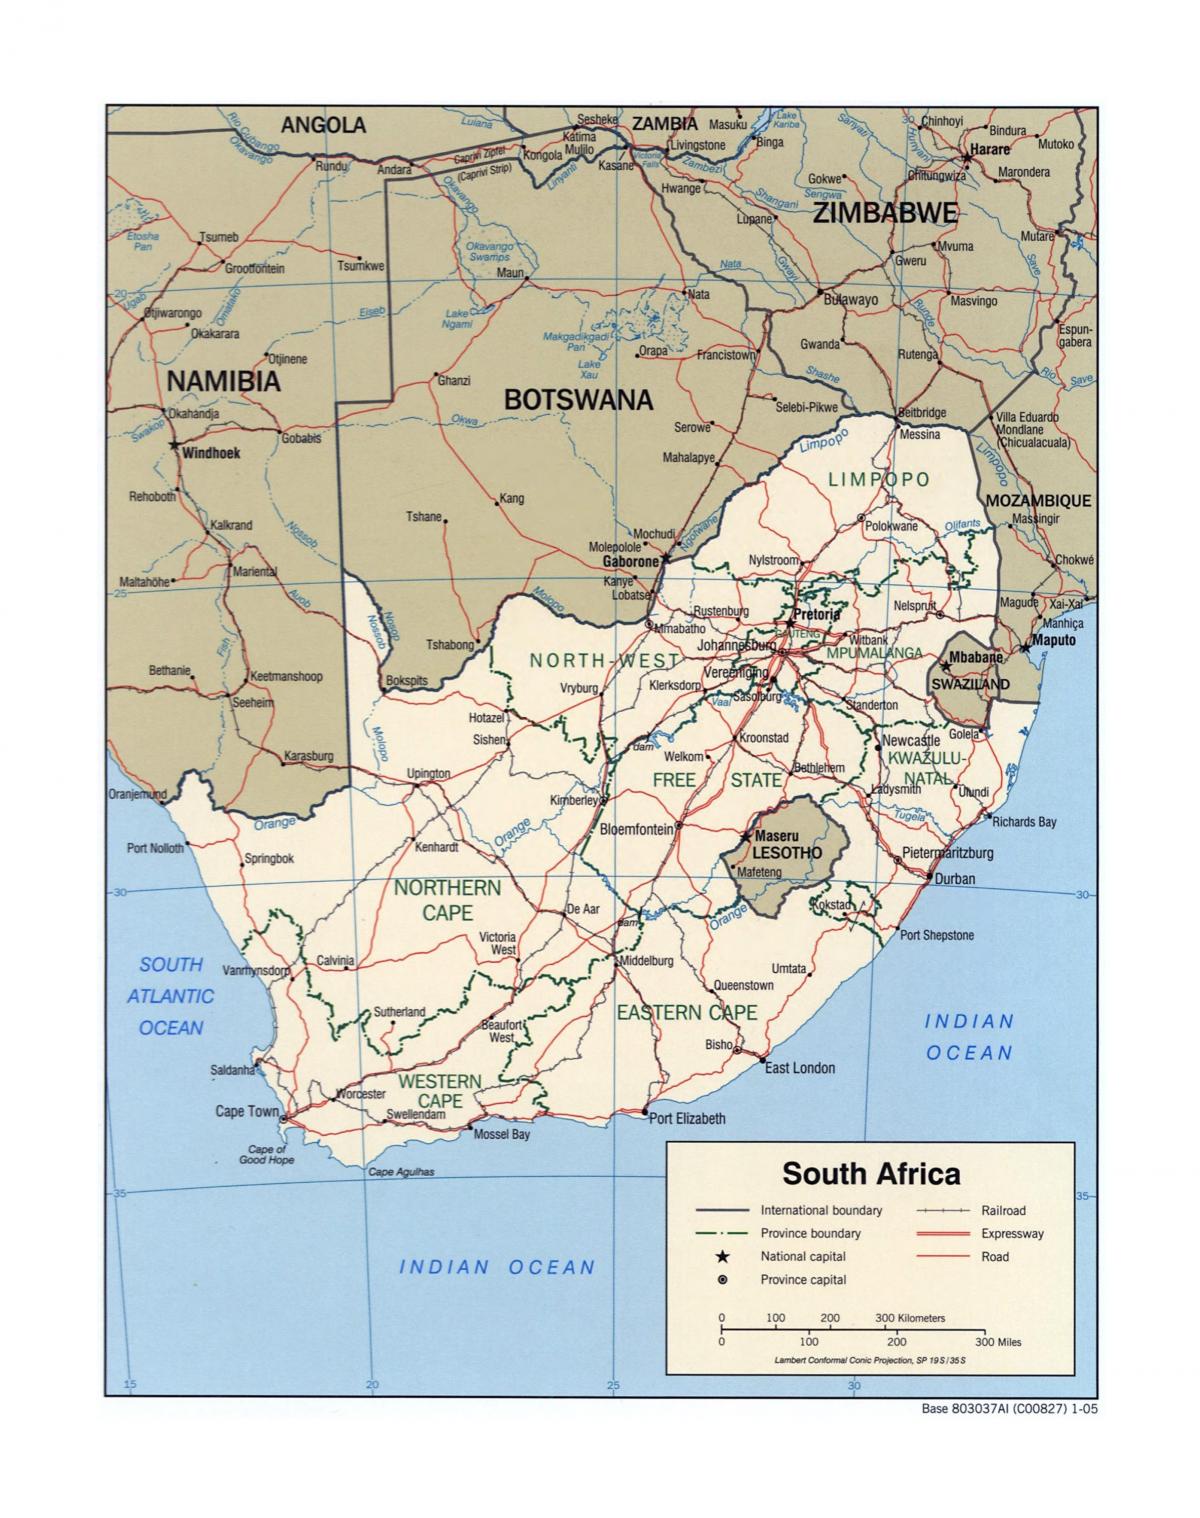 خريطة جنوب أفريقيا مع المدن الرئيسية